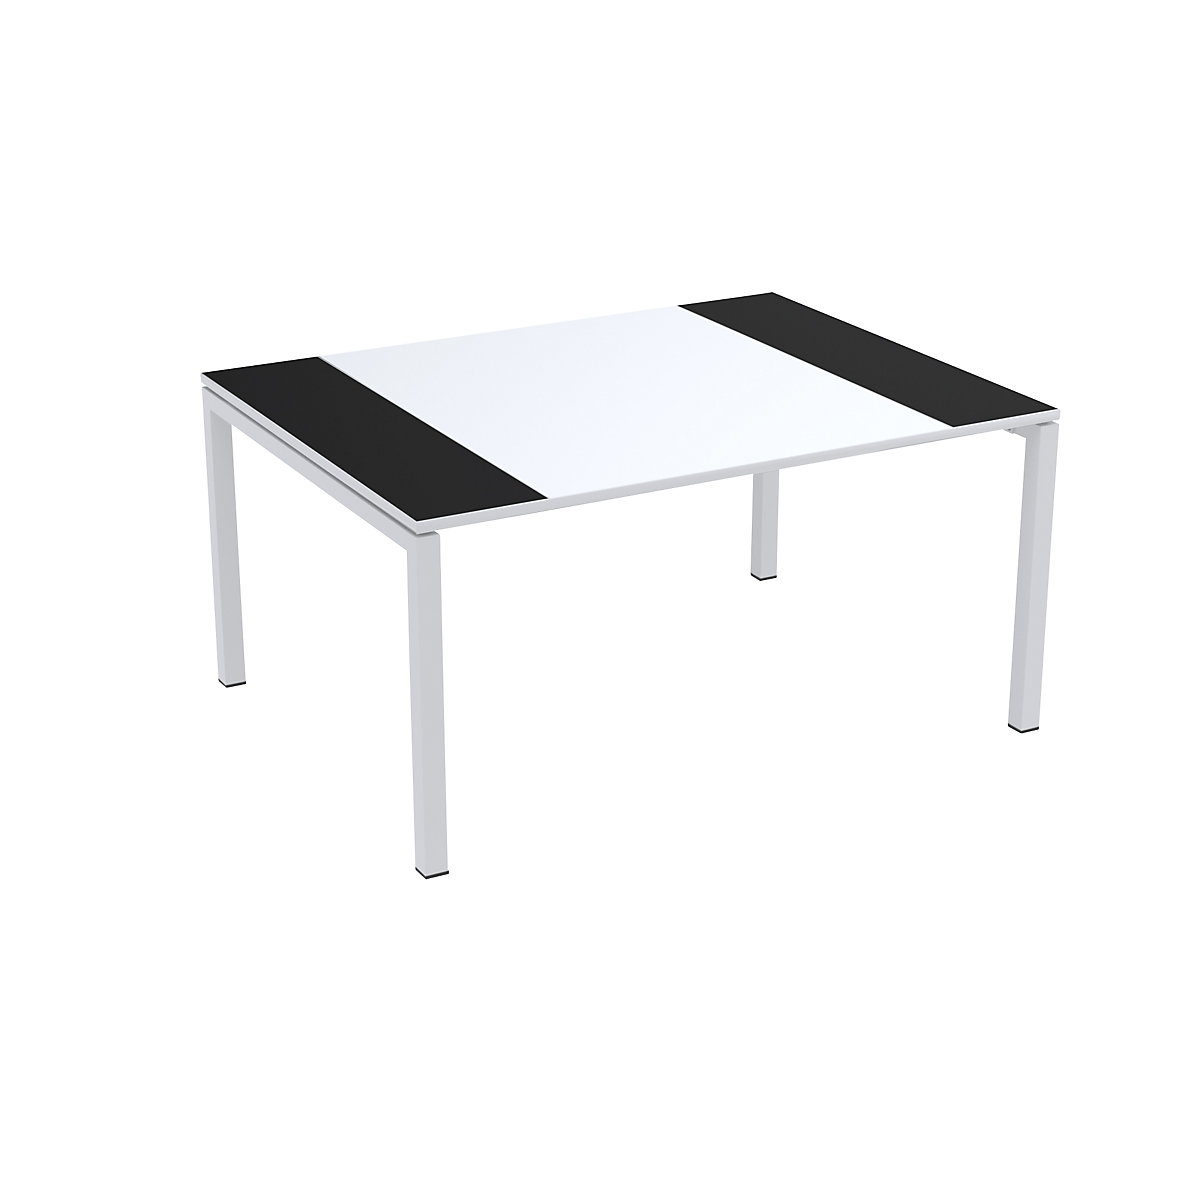 Konferenztisch easyDesk® Paperflow, HxBxT 750 x 1500 x 1160 mm, weiß/schwarz-5